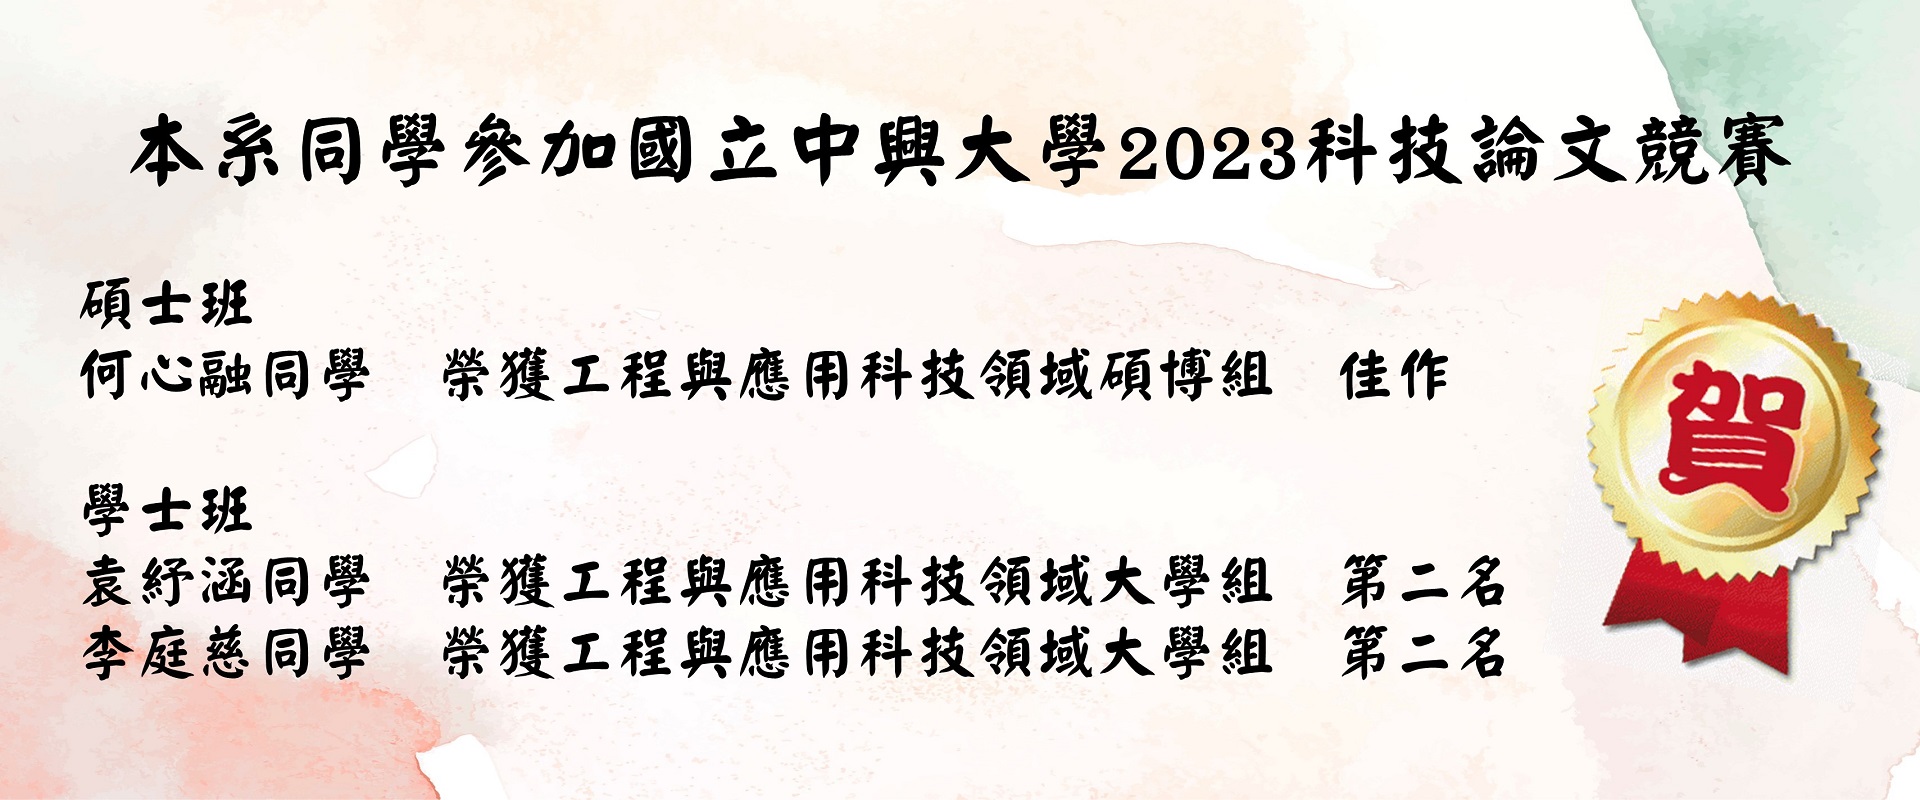 中興大學2023科技論文競賽